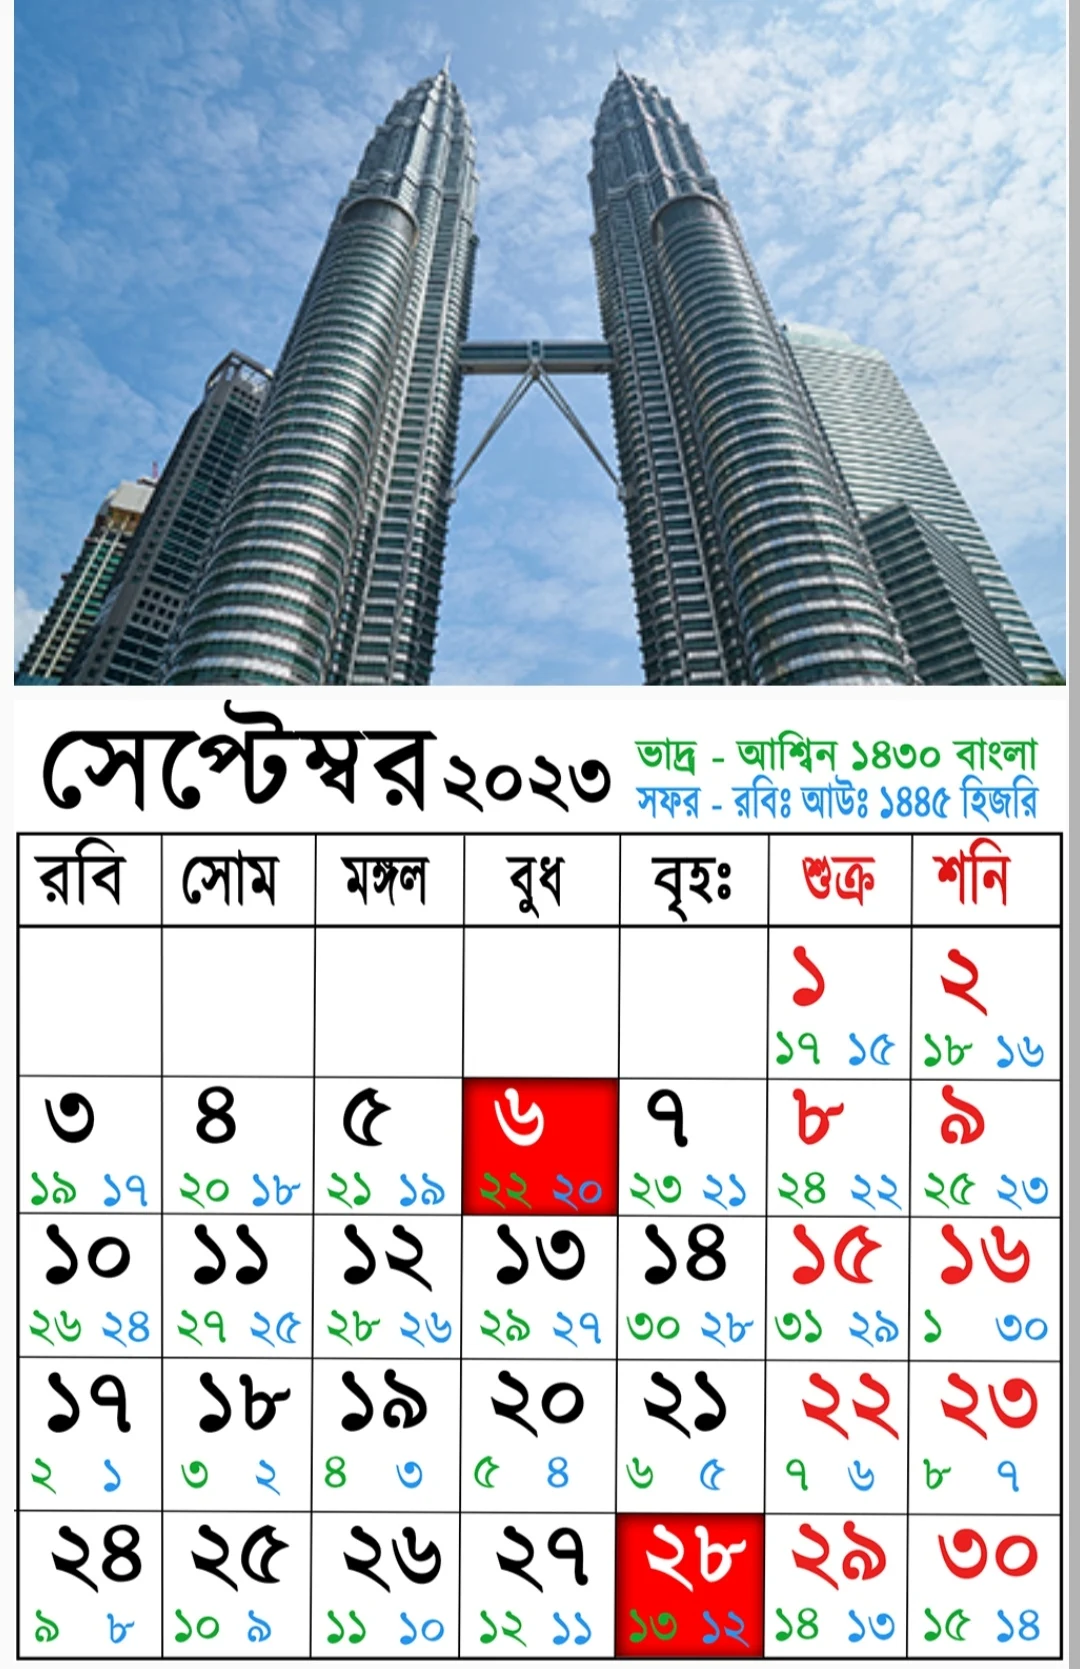 বাংলা ইংরেজি আরবি ক্যালেন্ডার ২০২৩ | Bangla English Arabi Calendar 2023 | আজকের তারিখ বাংলা ইংরেজি আরবি ২০২৩